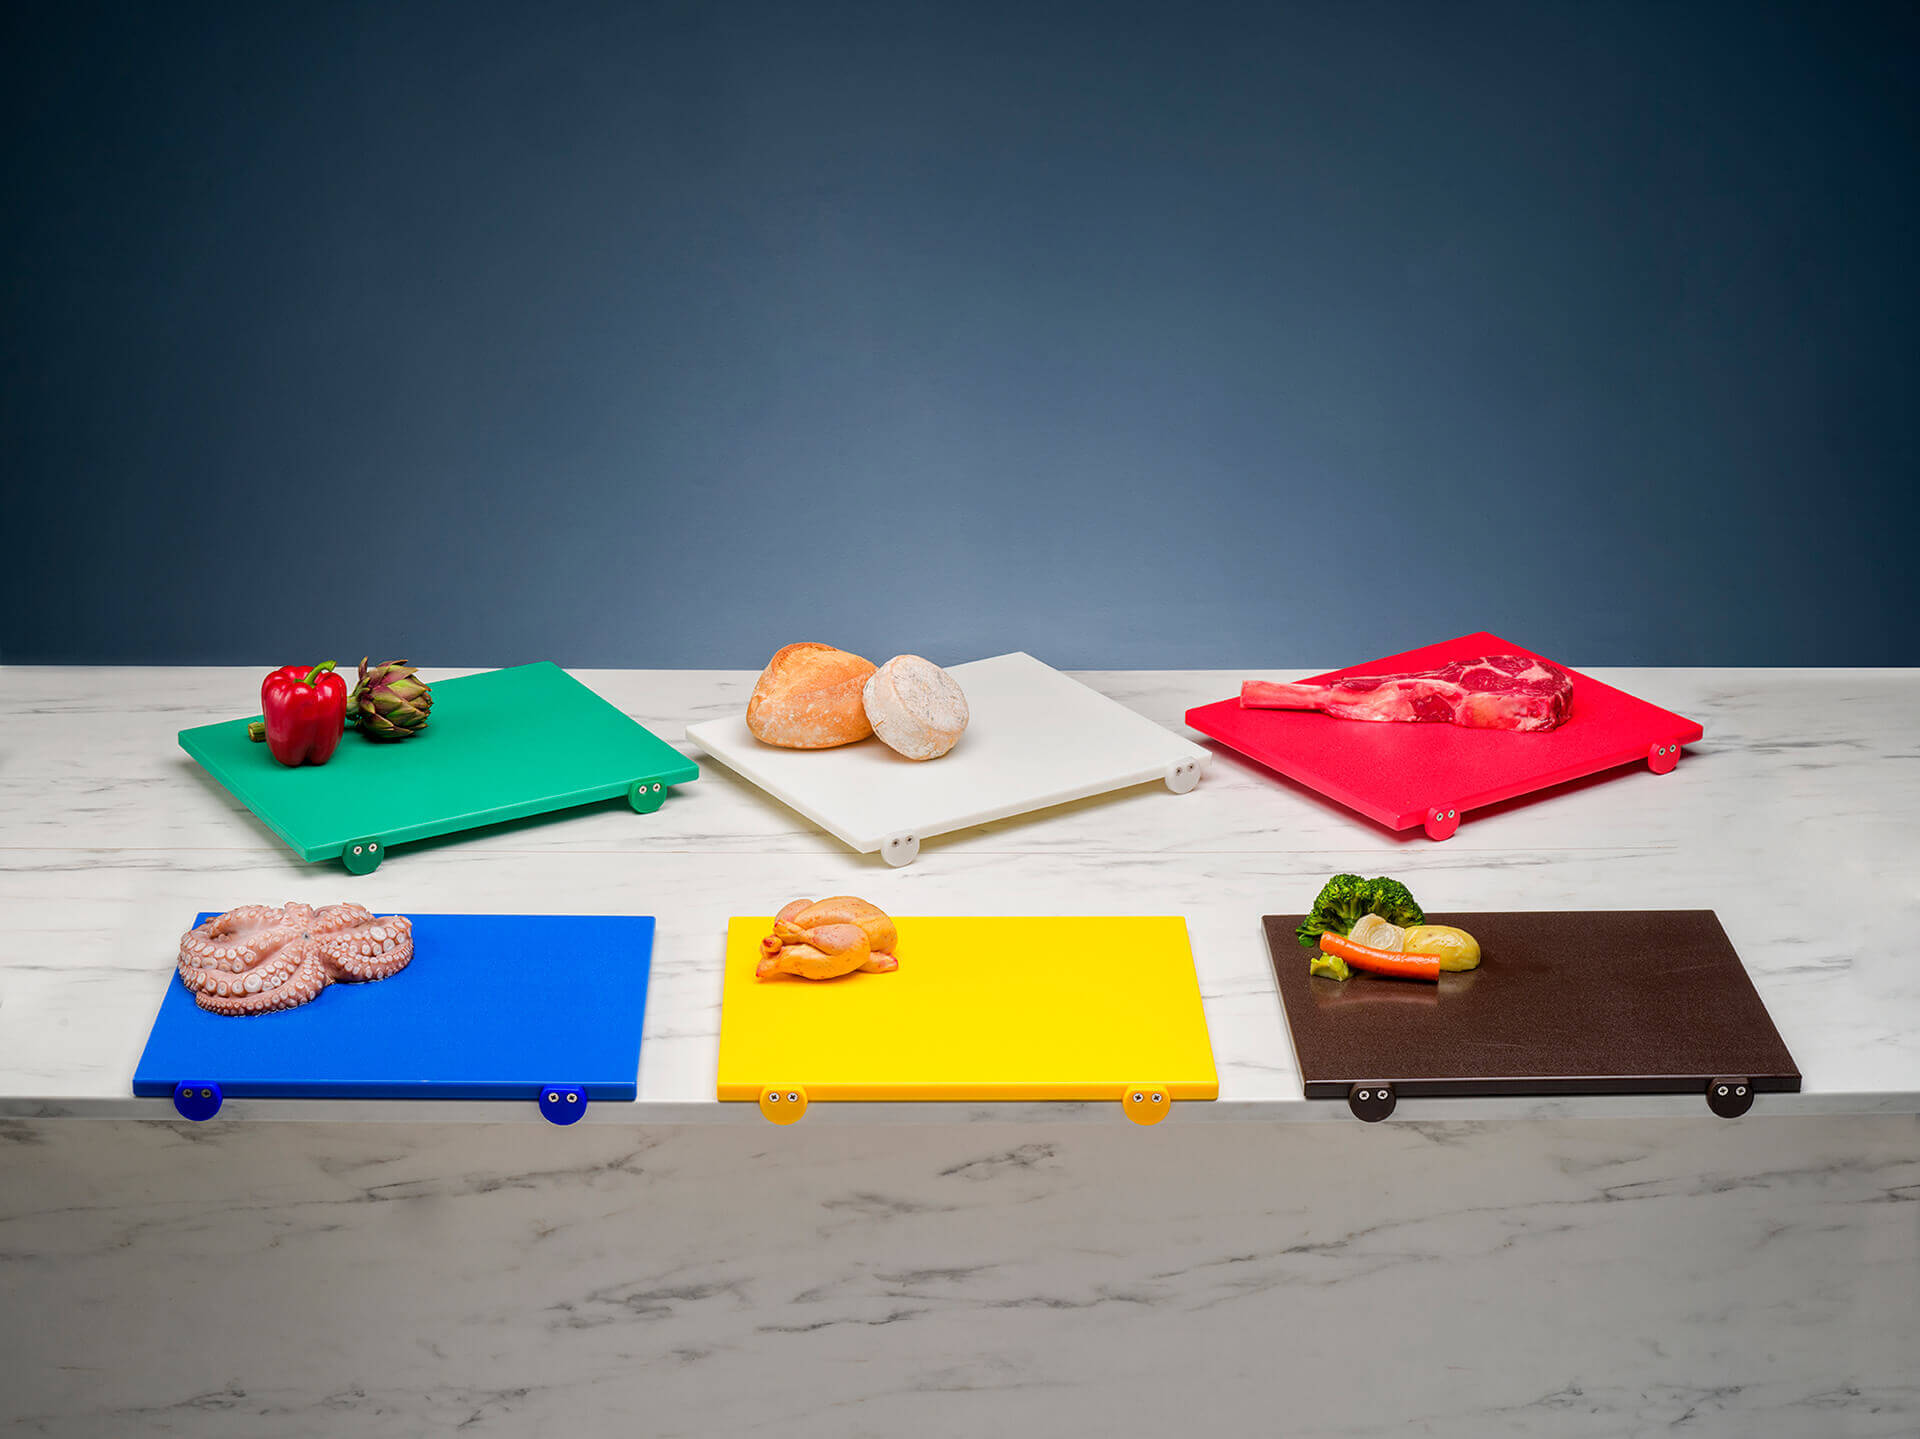 Normativa HACCP sui taglieri da cucina: cosa stabilisce e quali colori  comprende